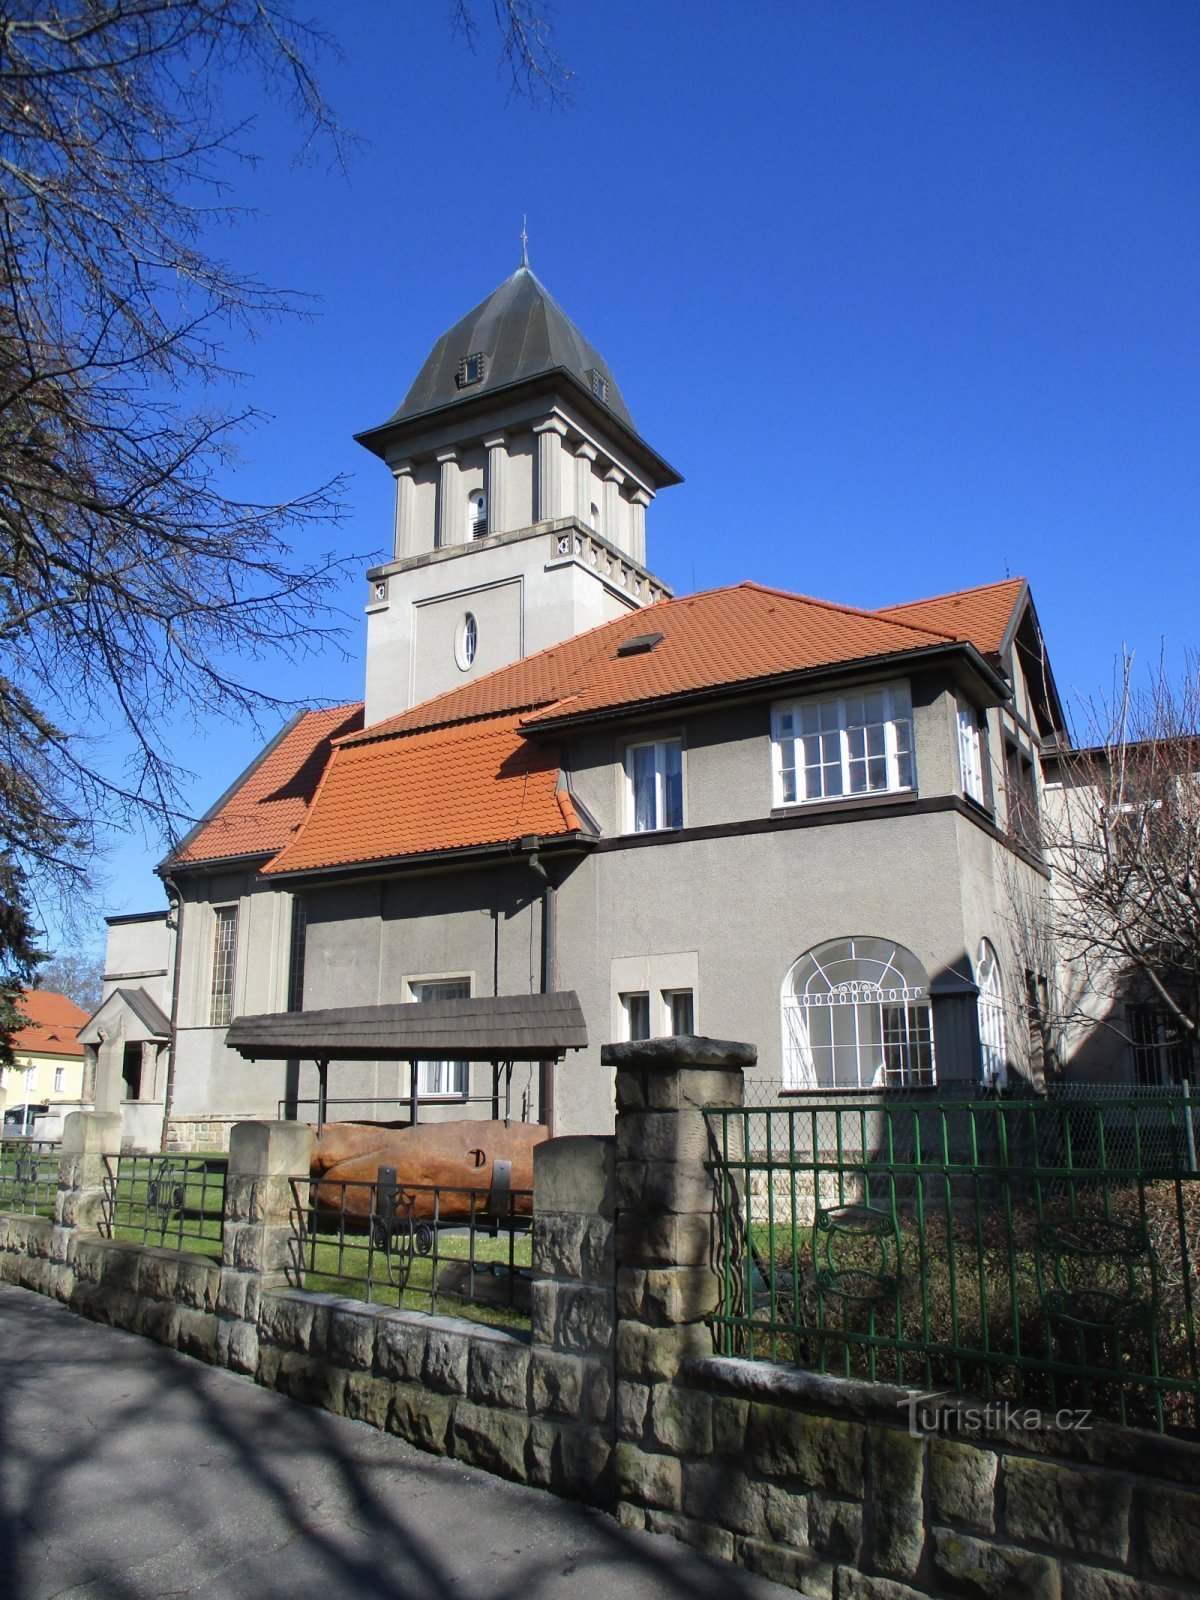 Evangeličanska cerkev z župniščem (Hradec Králové, 19.3.2020. XNUMX. XNUMX)